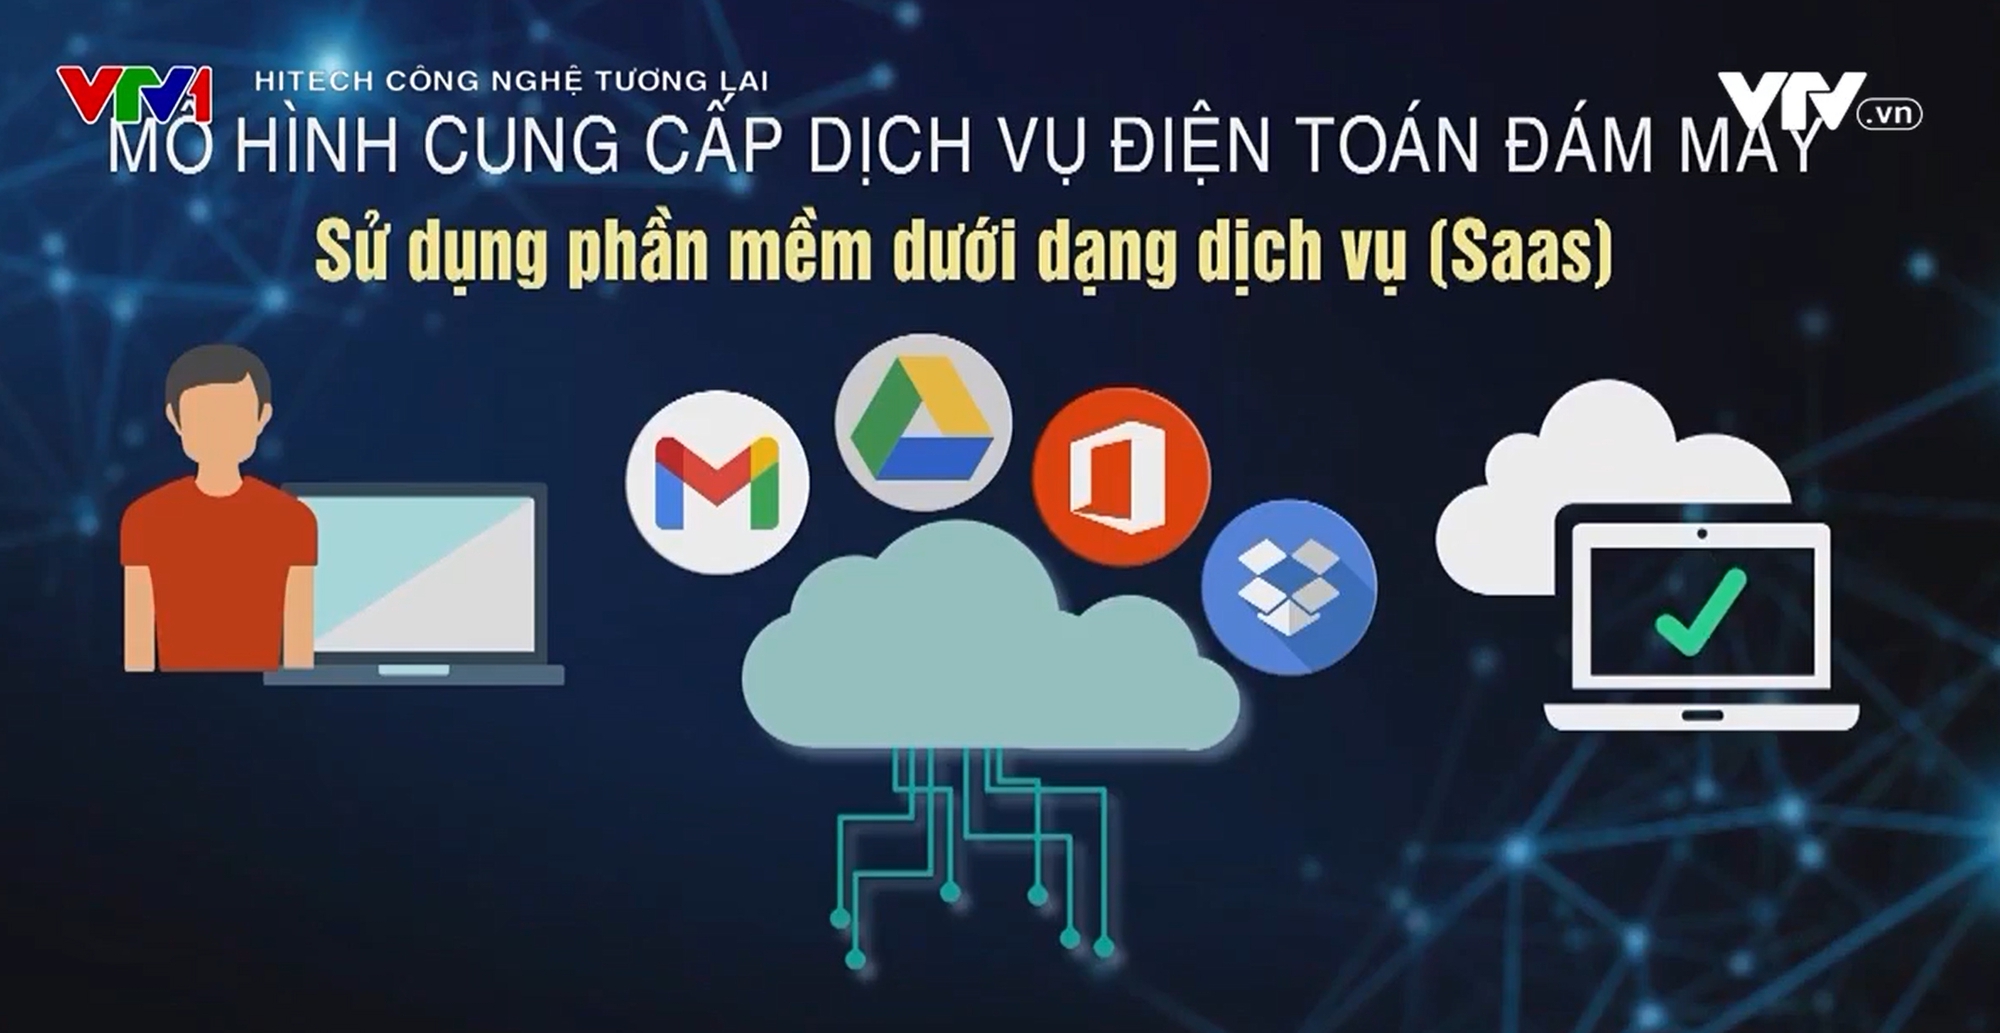 Điện toán đám mây - Nền tảng dẫn dắt công nghệ thế giới - Ảnh 3.